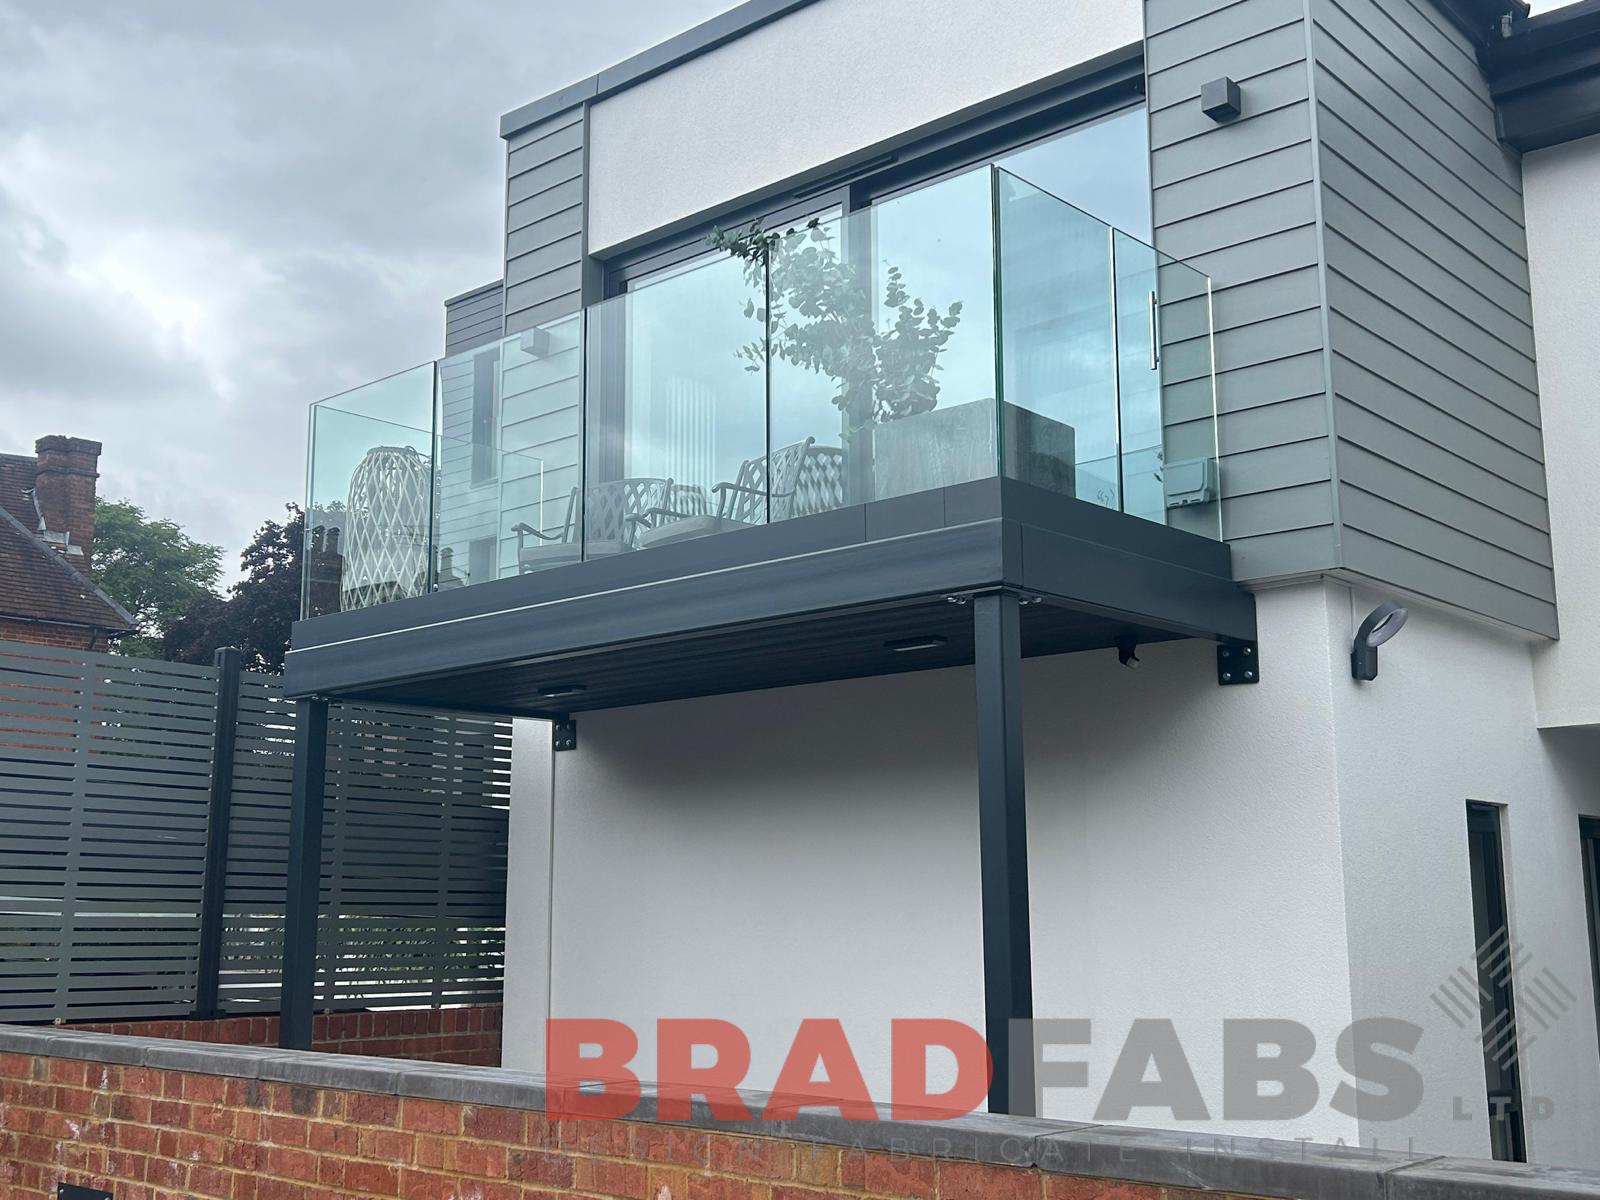 Bradfabs balcony, glass balustrade on bespoke steel balcony